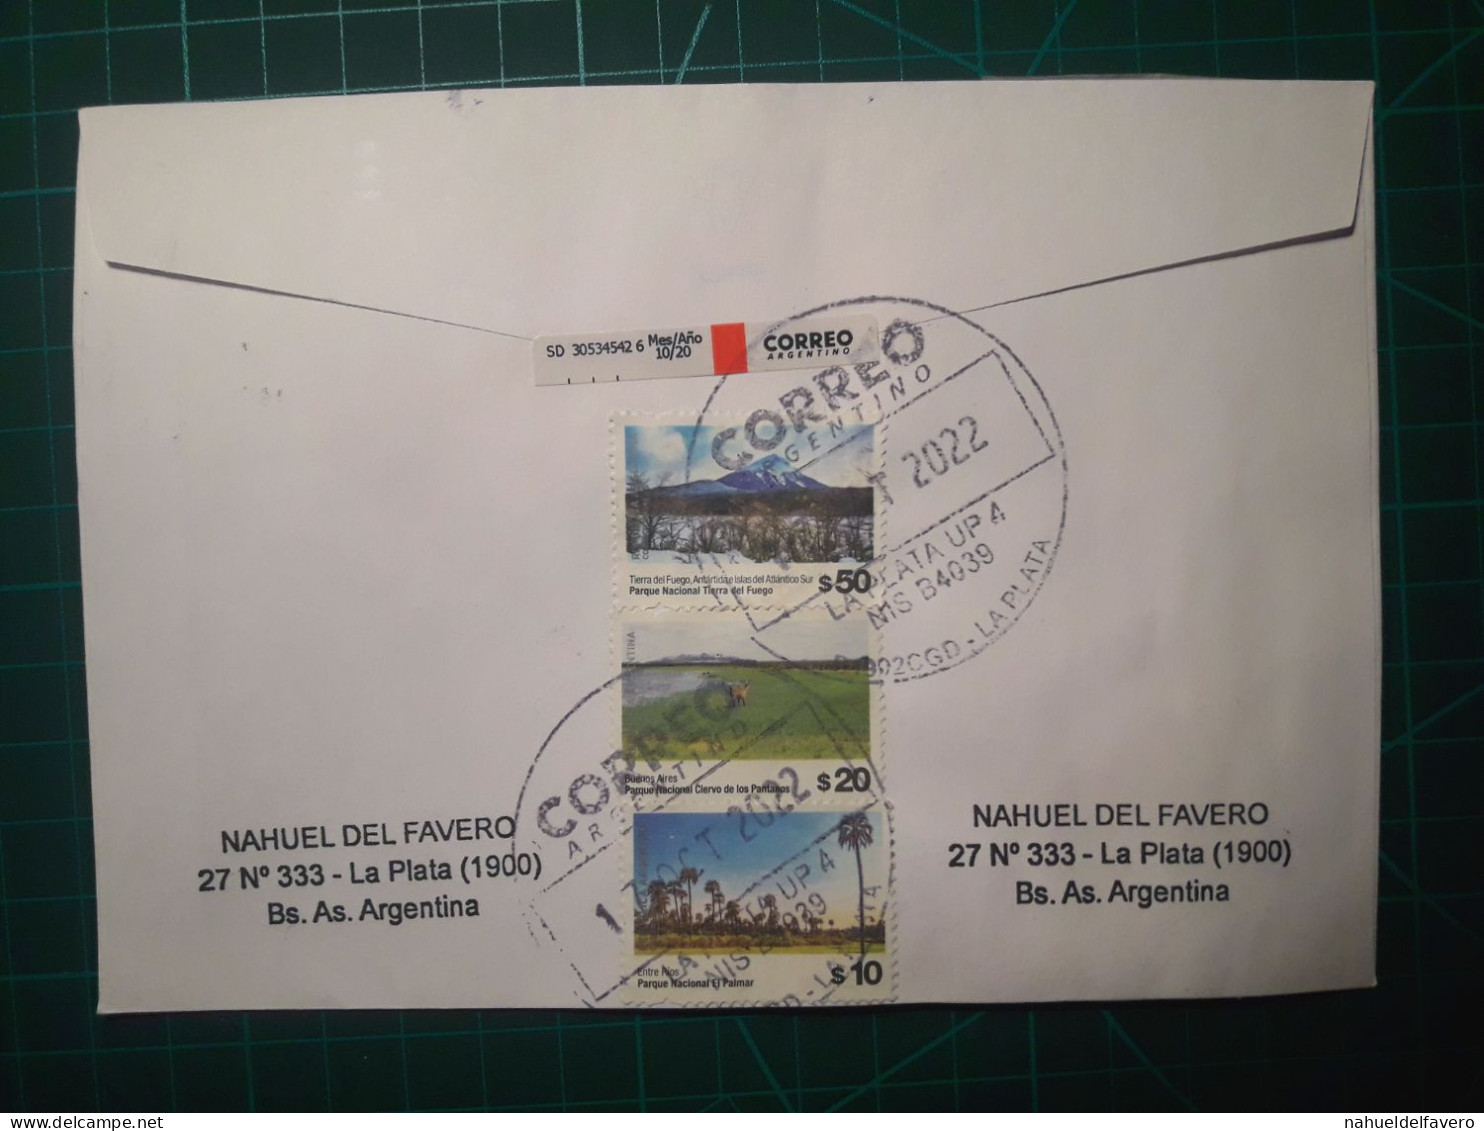 ARGENTINE, Enveloppe Envoyée à La Plata, Argentine, Avec Une Belle Variété De Timbres Postaux (Paysages Naturels Nationa - Used Stamps